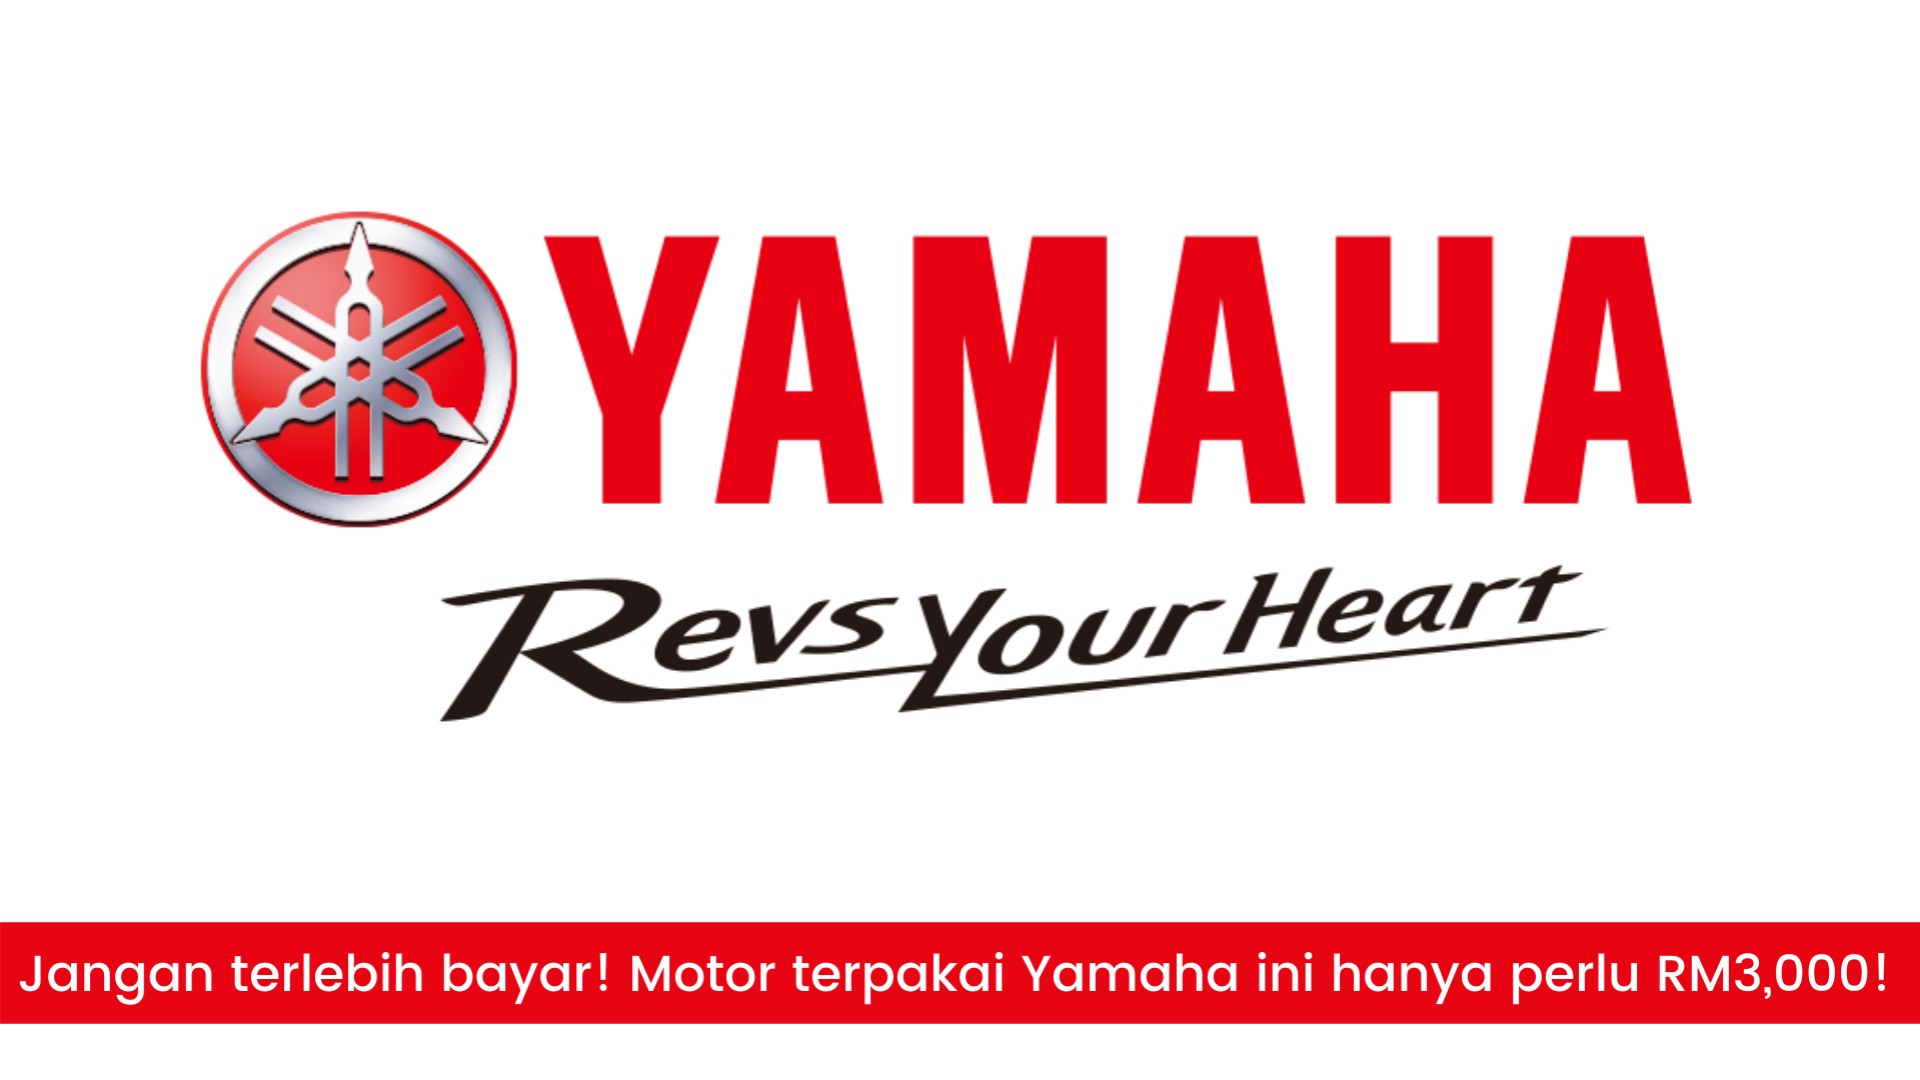 Jangan terlebih bayar! Motor terpakai Yamaha ini hanya perlu RM3,000!